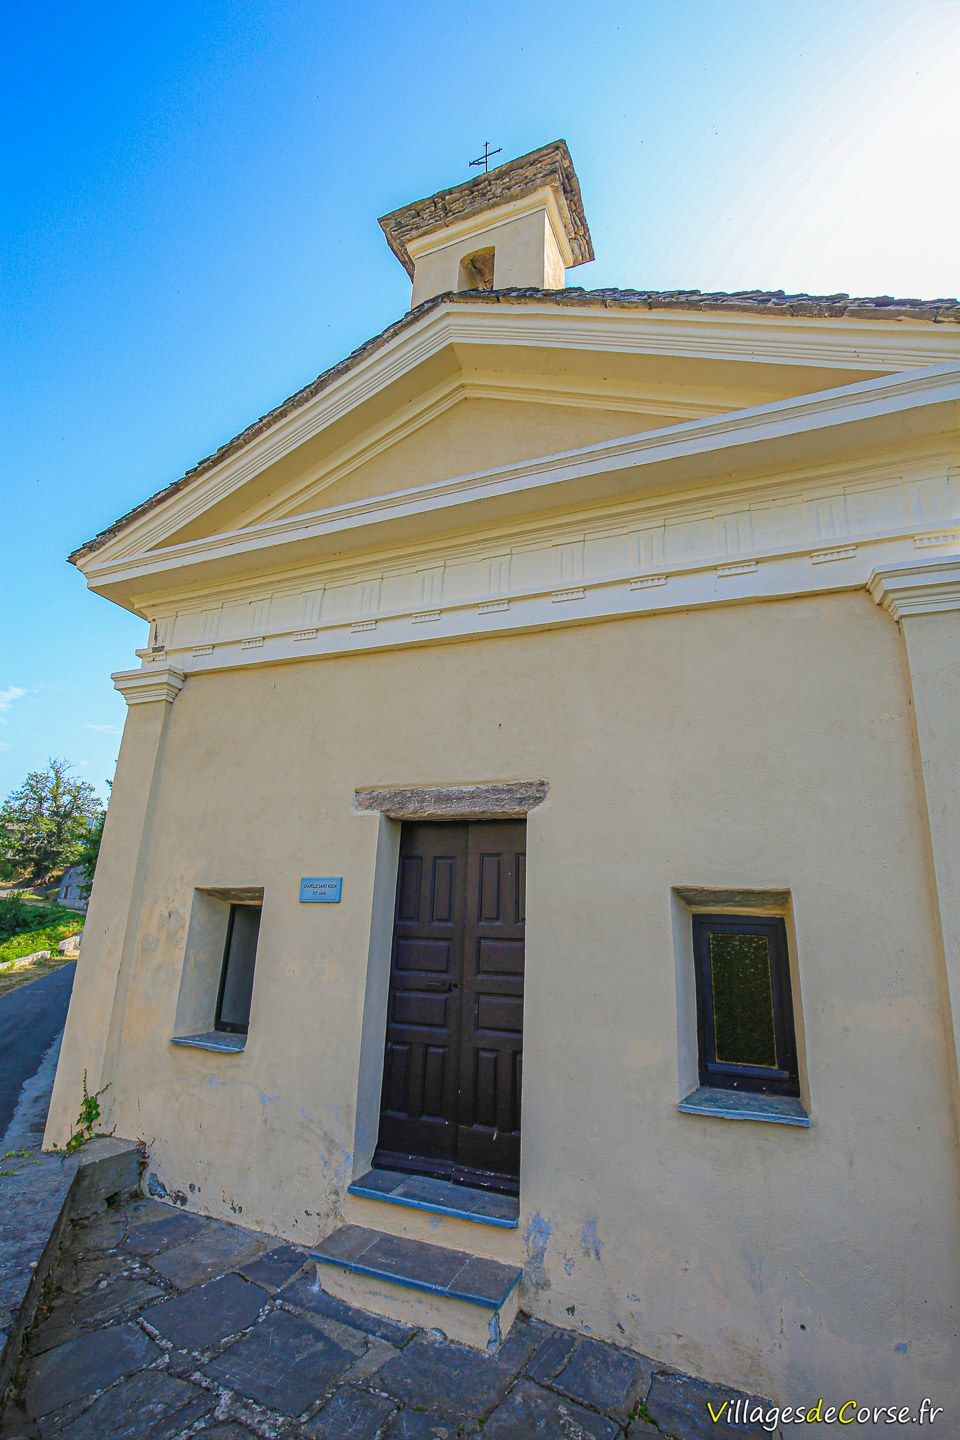 Chapelle - Saint Roch - Carcheto Brustico